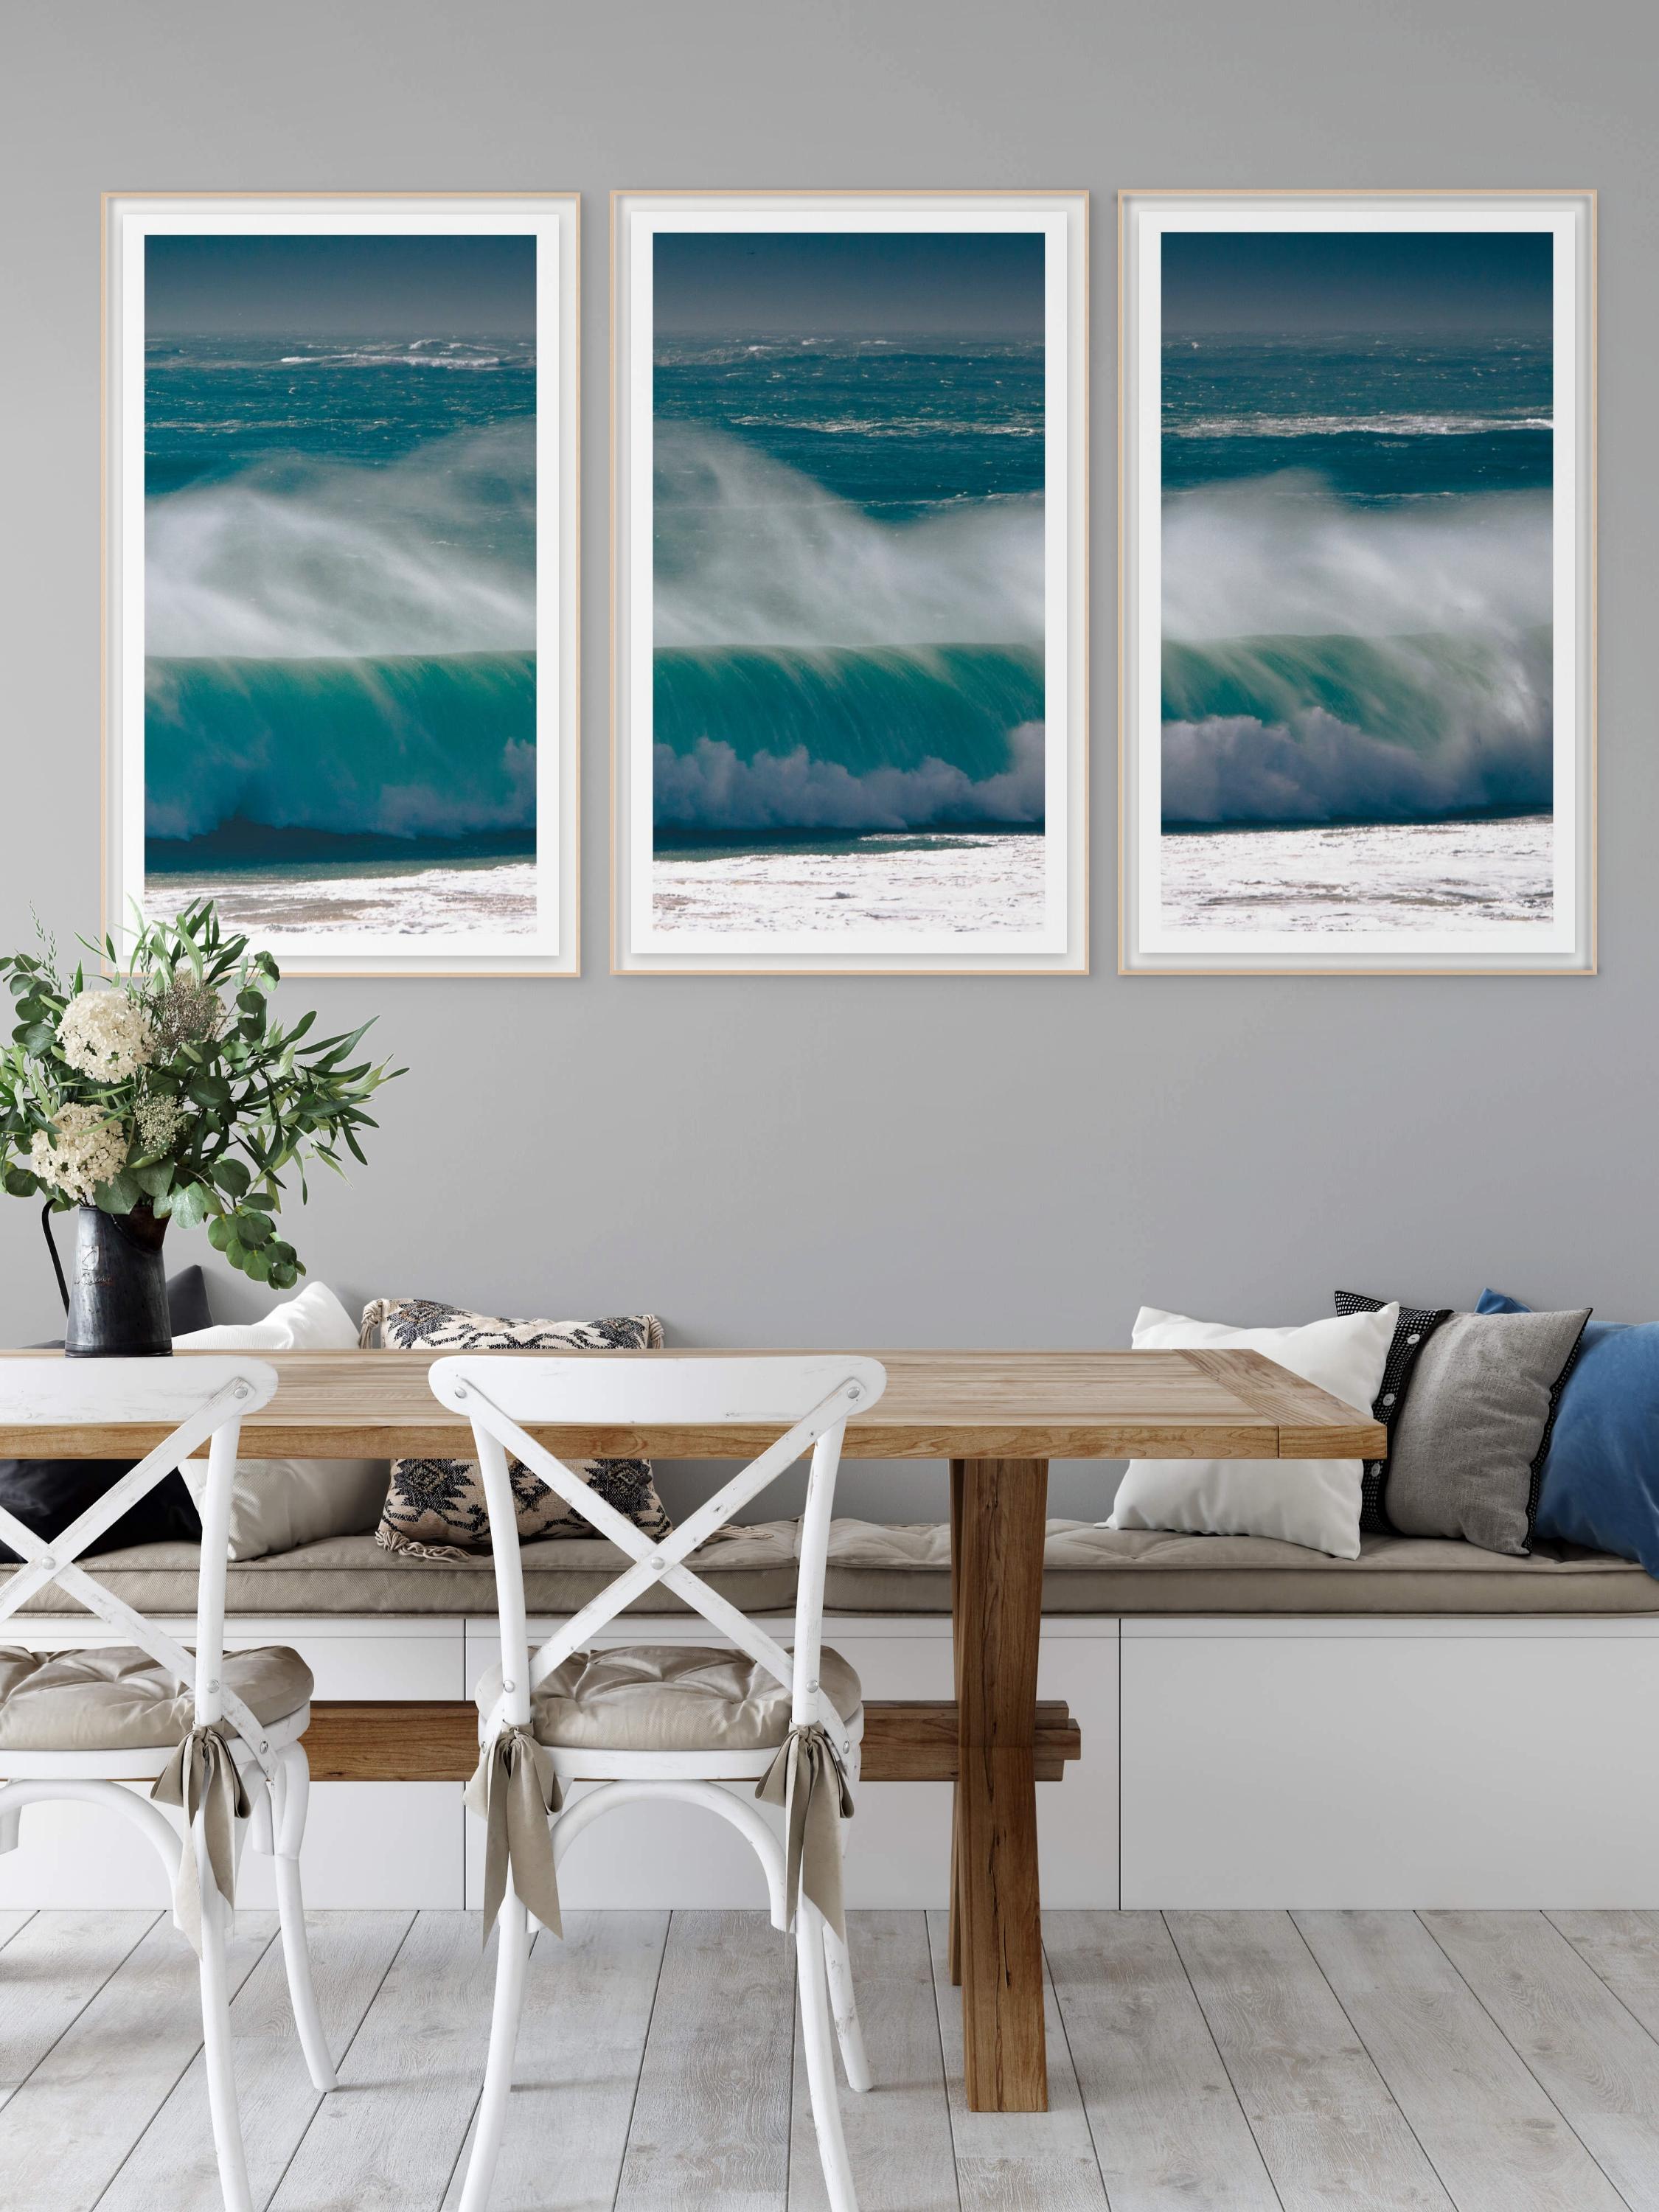 Photographie triptyque à grande échelle « Pounding Heart ». Océan, mer, vague de cottage de plage - Bleu Landscape Photograph par Sophia Milligan